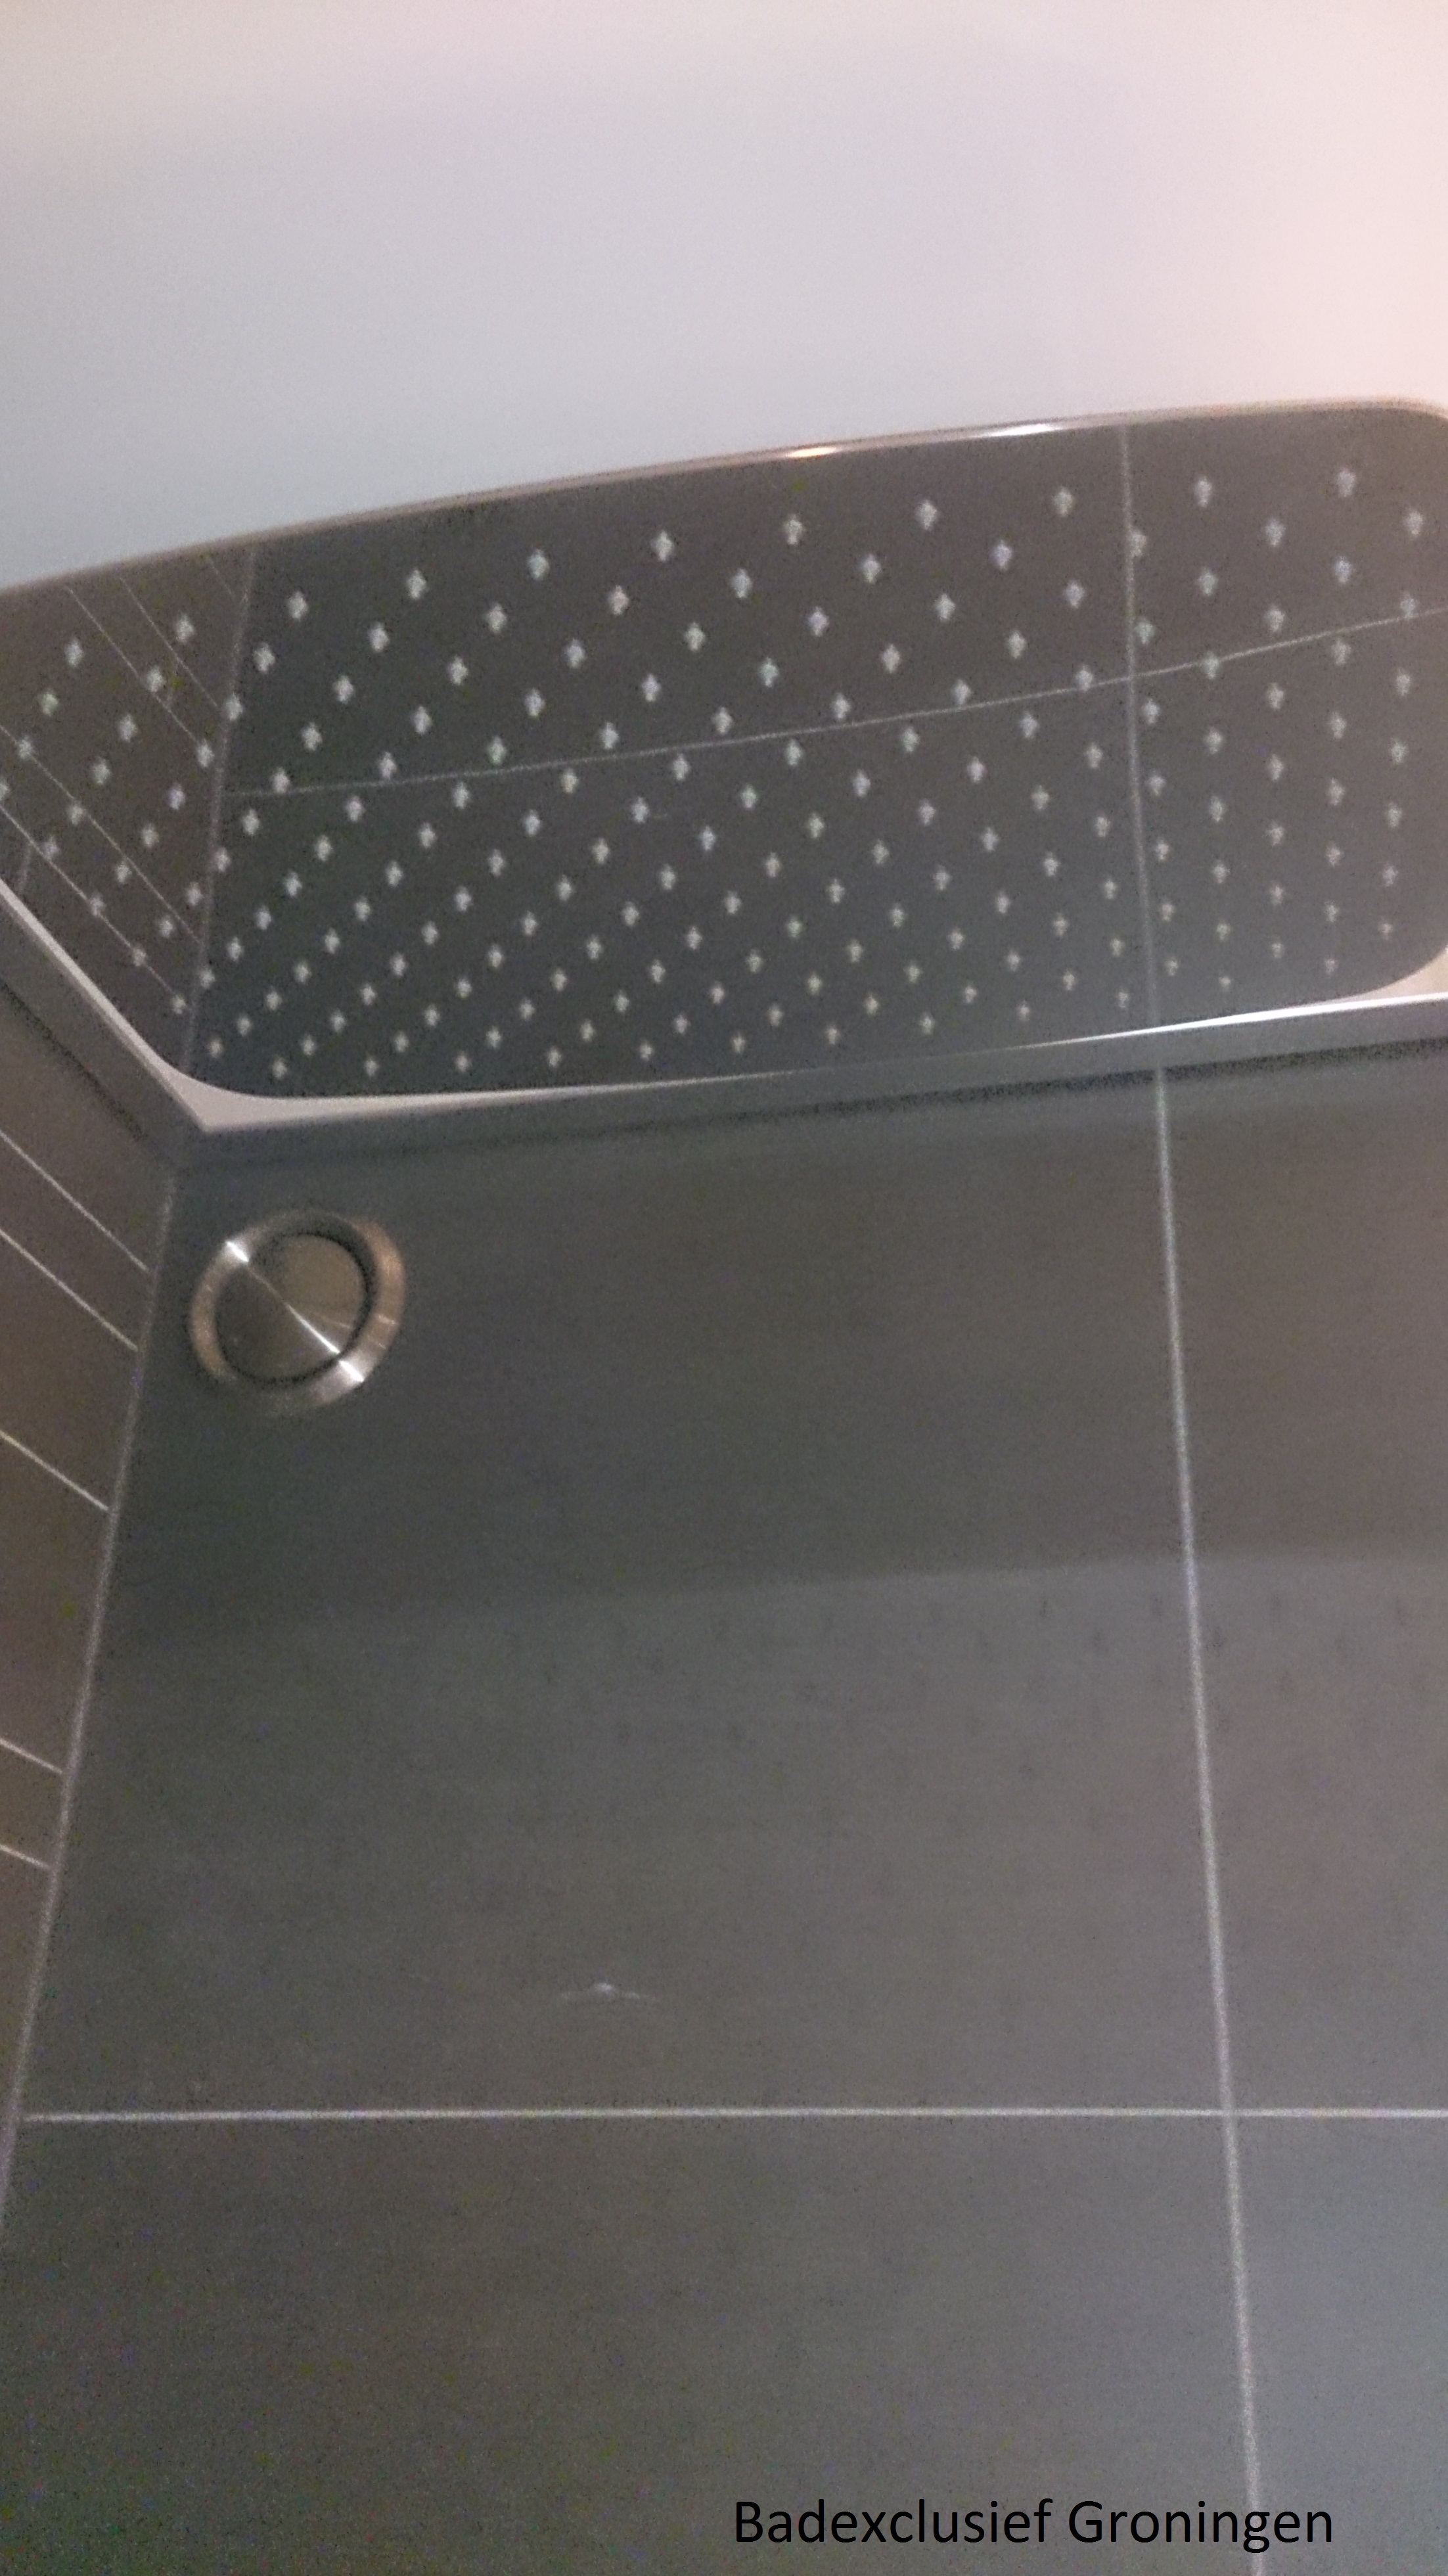 luxe badkamer van badexclusief met rvs-regendouchekop, als stortdouche.